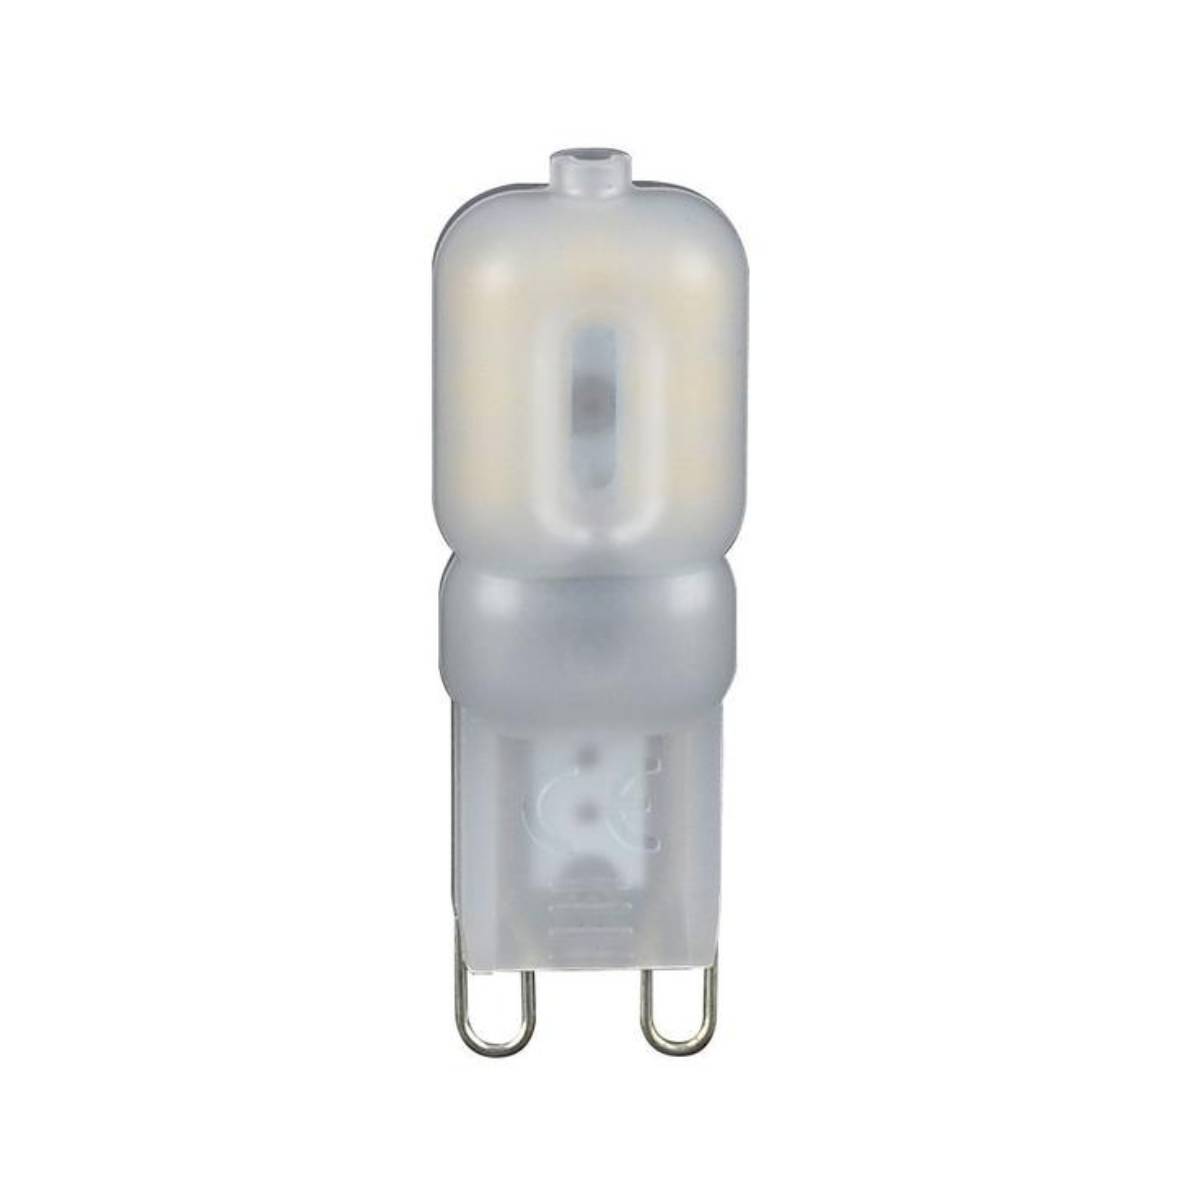 Forum Inlight INL-28574 G9 LED Capsule Light Bulb - Cool White (5617)